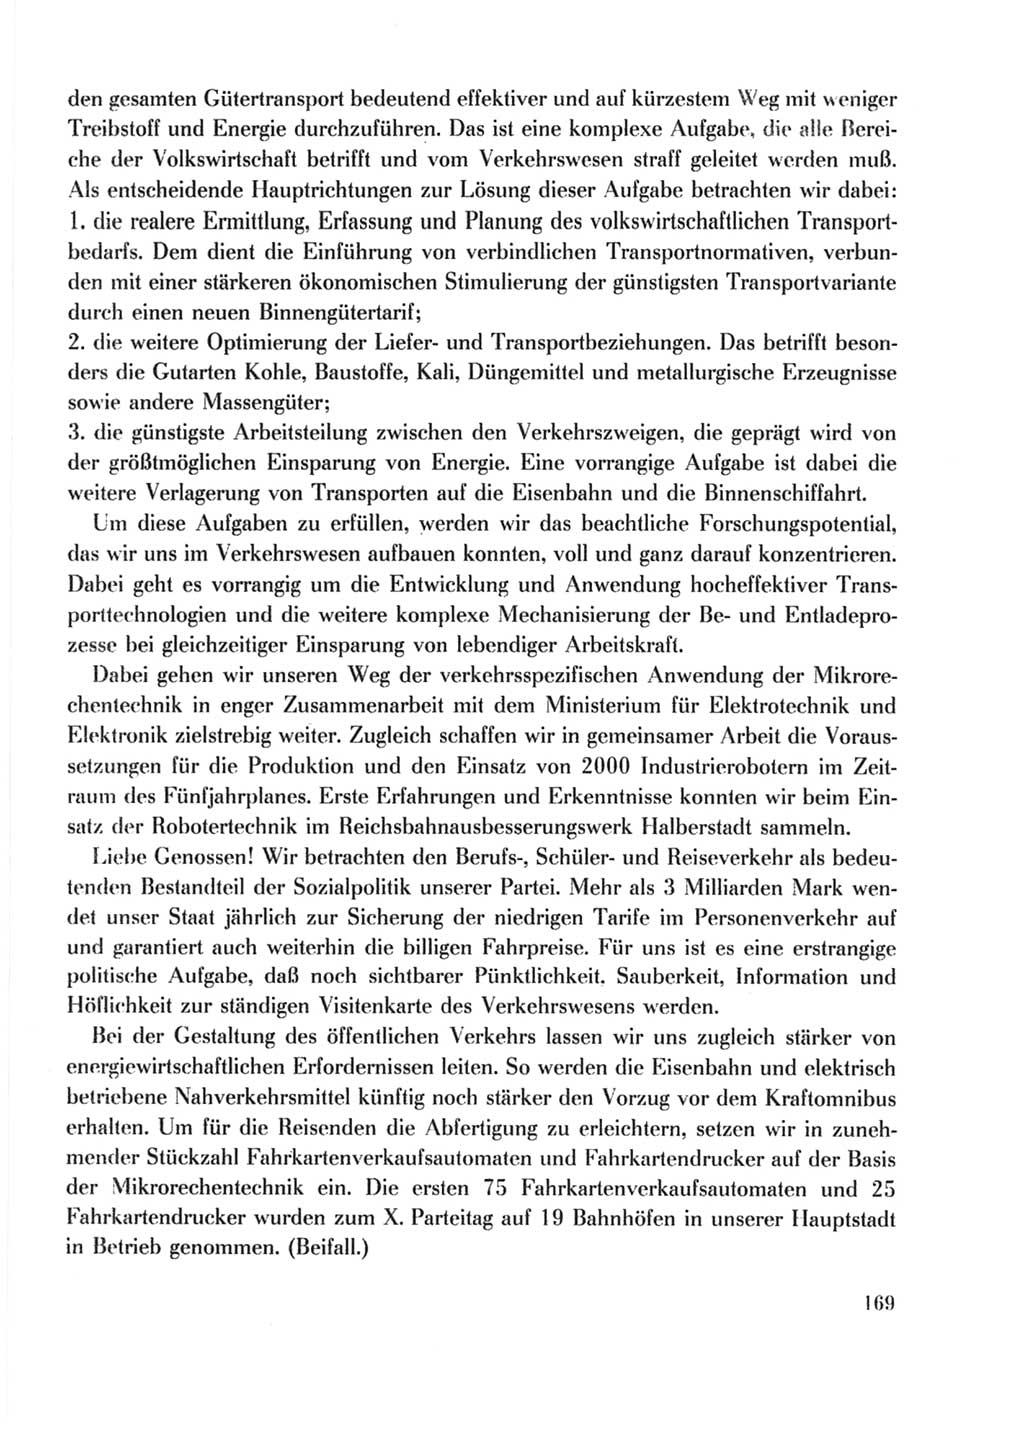 Protokoll der Verhandlungen des Ⅹ. Parteitages der Sozialistischen Einheitspartei Deutschlands (SED) [Deutsche Demokratische Republik (DDR)] 1981, Band 2, Seite 169 (Prot. Verh. Ⅹ. PT SED DDR 1981, Bd. 2, S. 169)